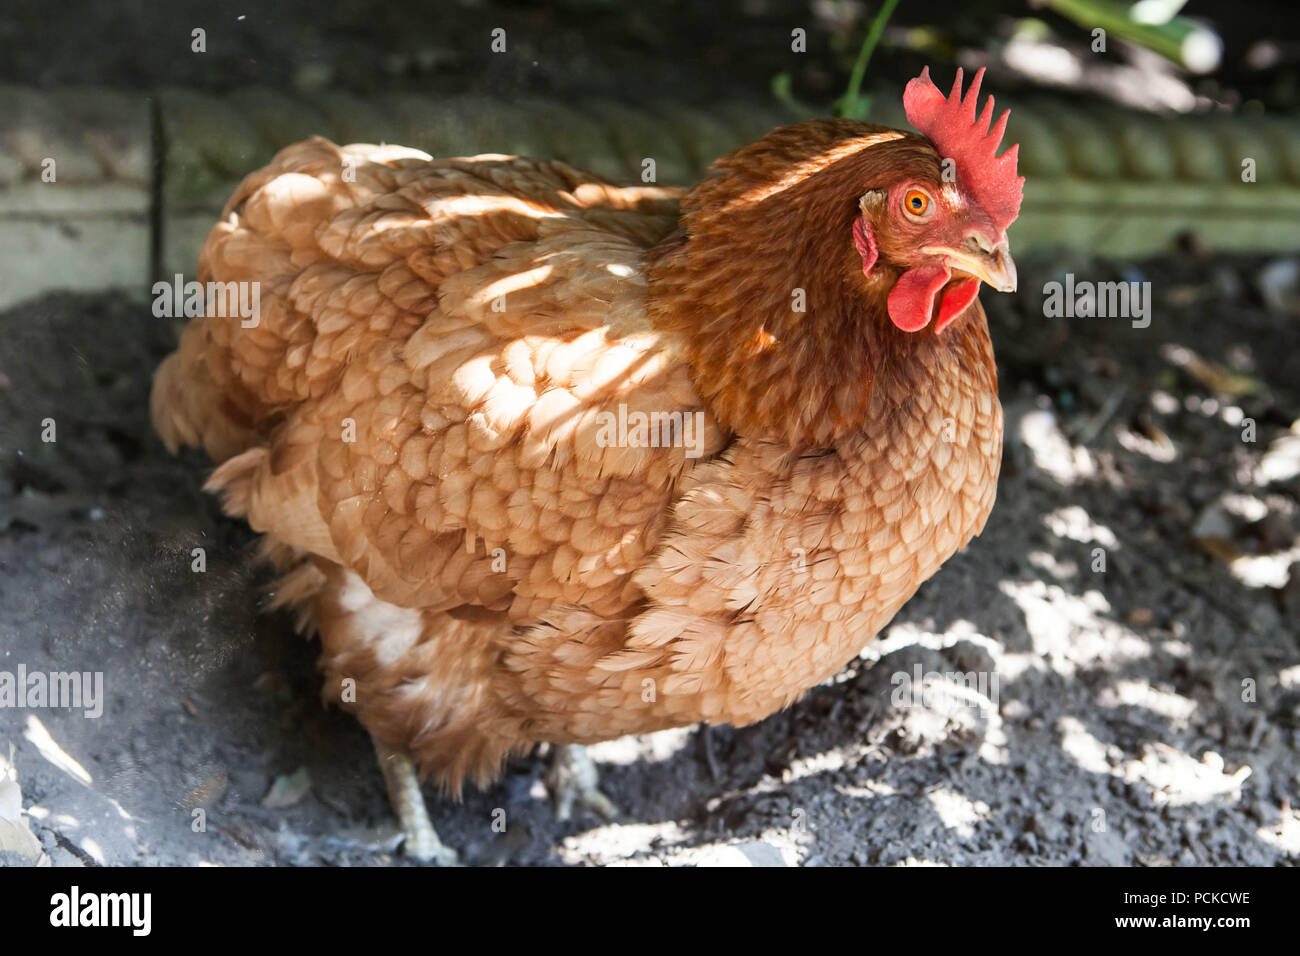 Batterie Huhn Hühner retten Stockfotografie - Alamy